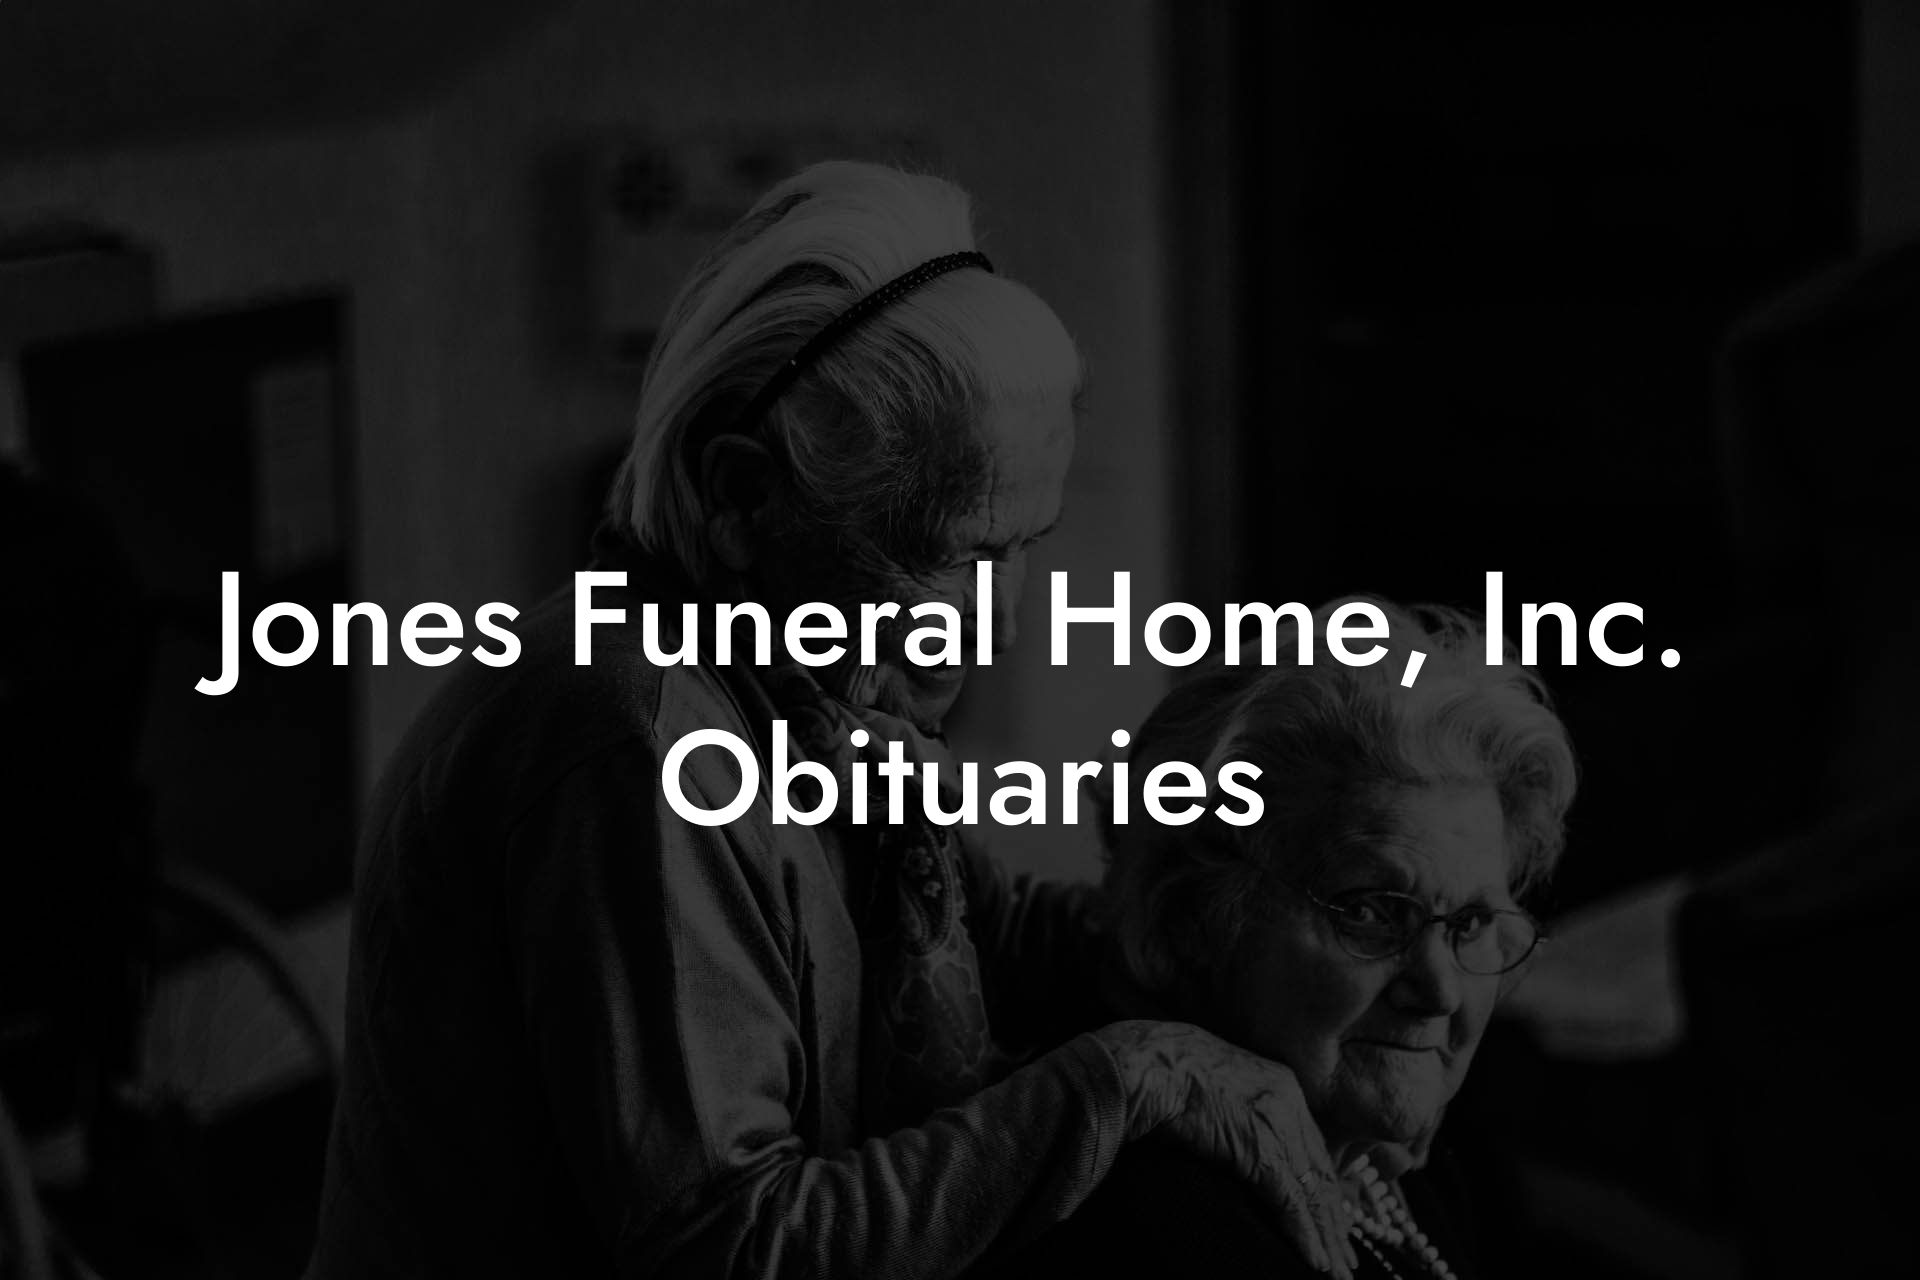 Jones Funeral Home, Inc. Obituaries